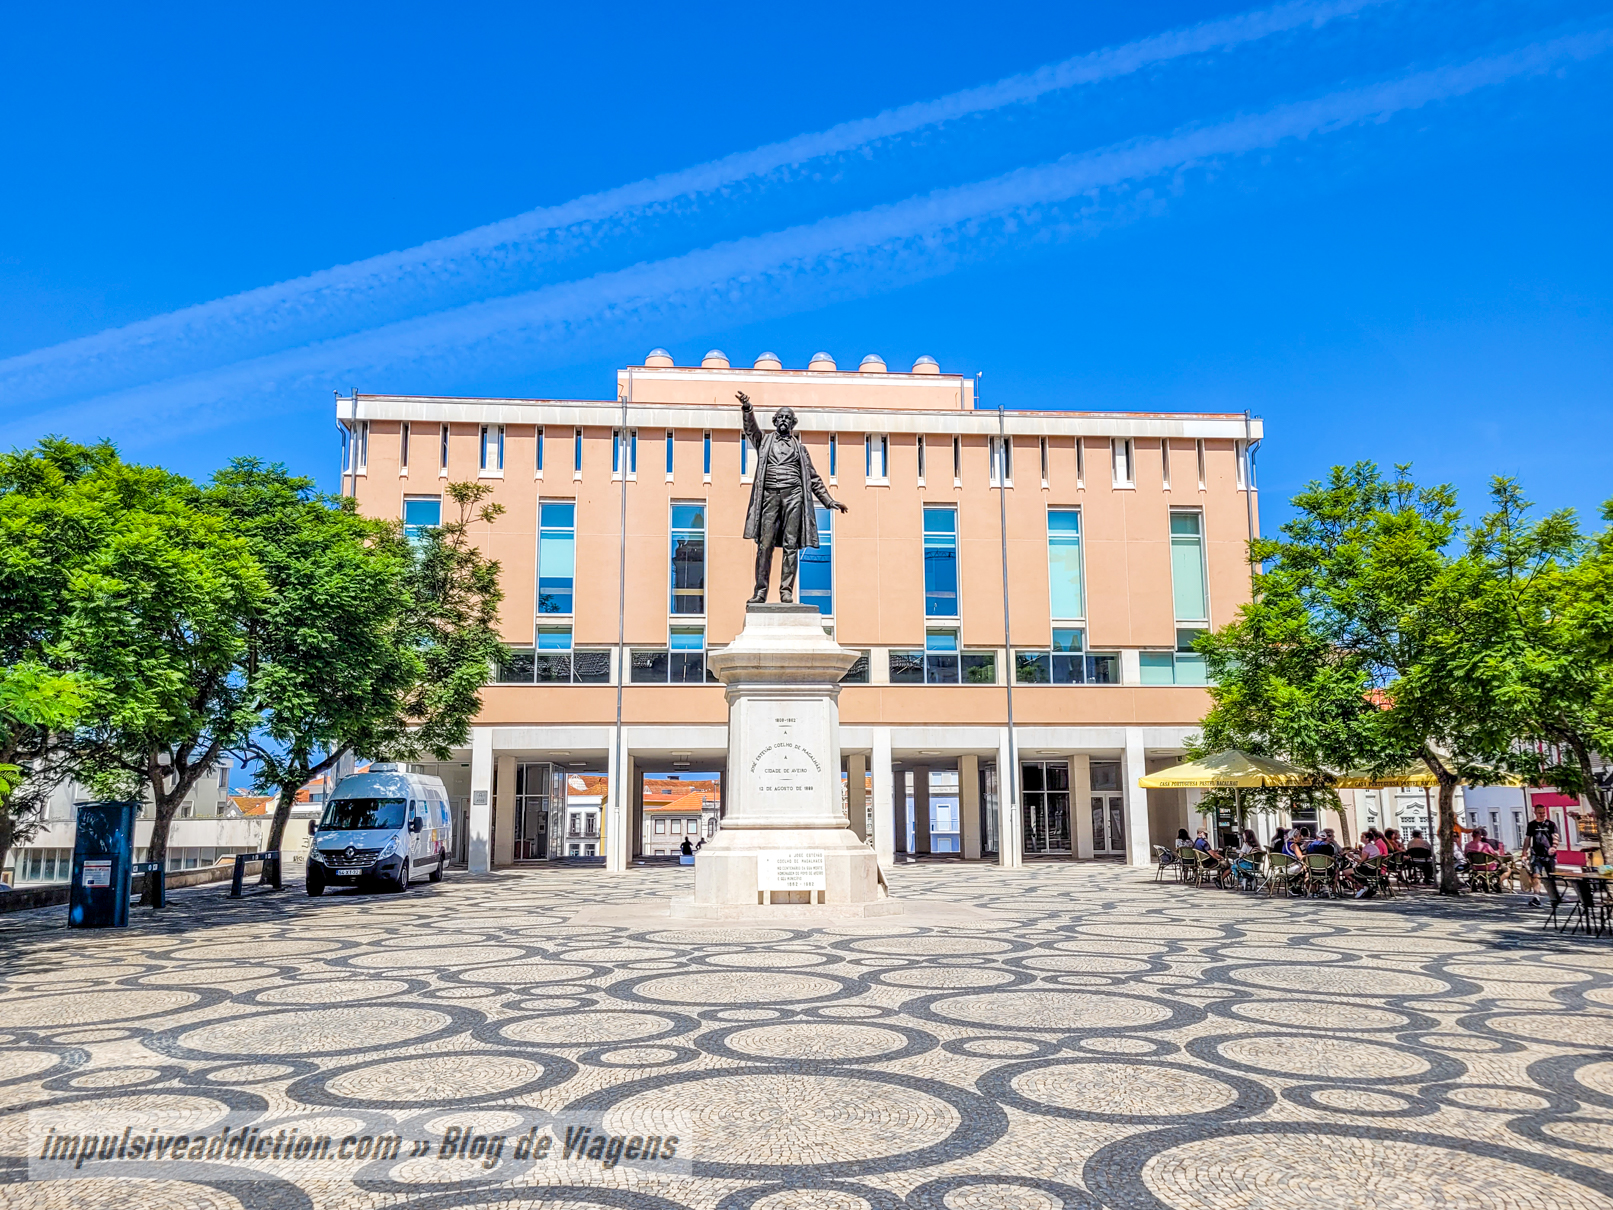 Republic Square in Aveiro